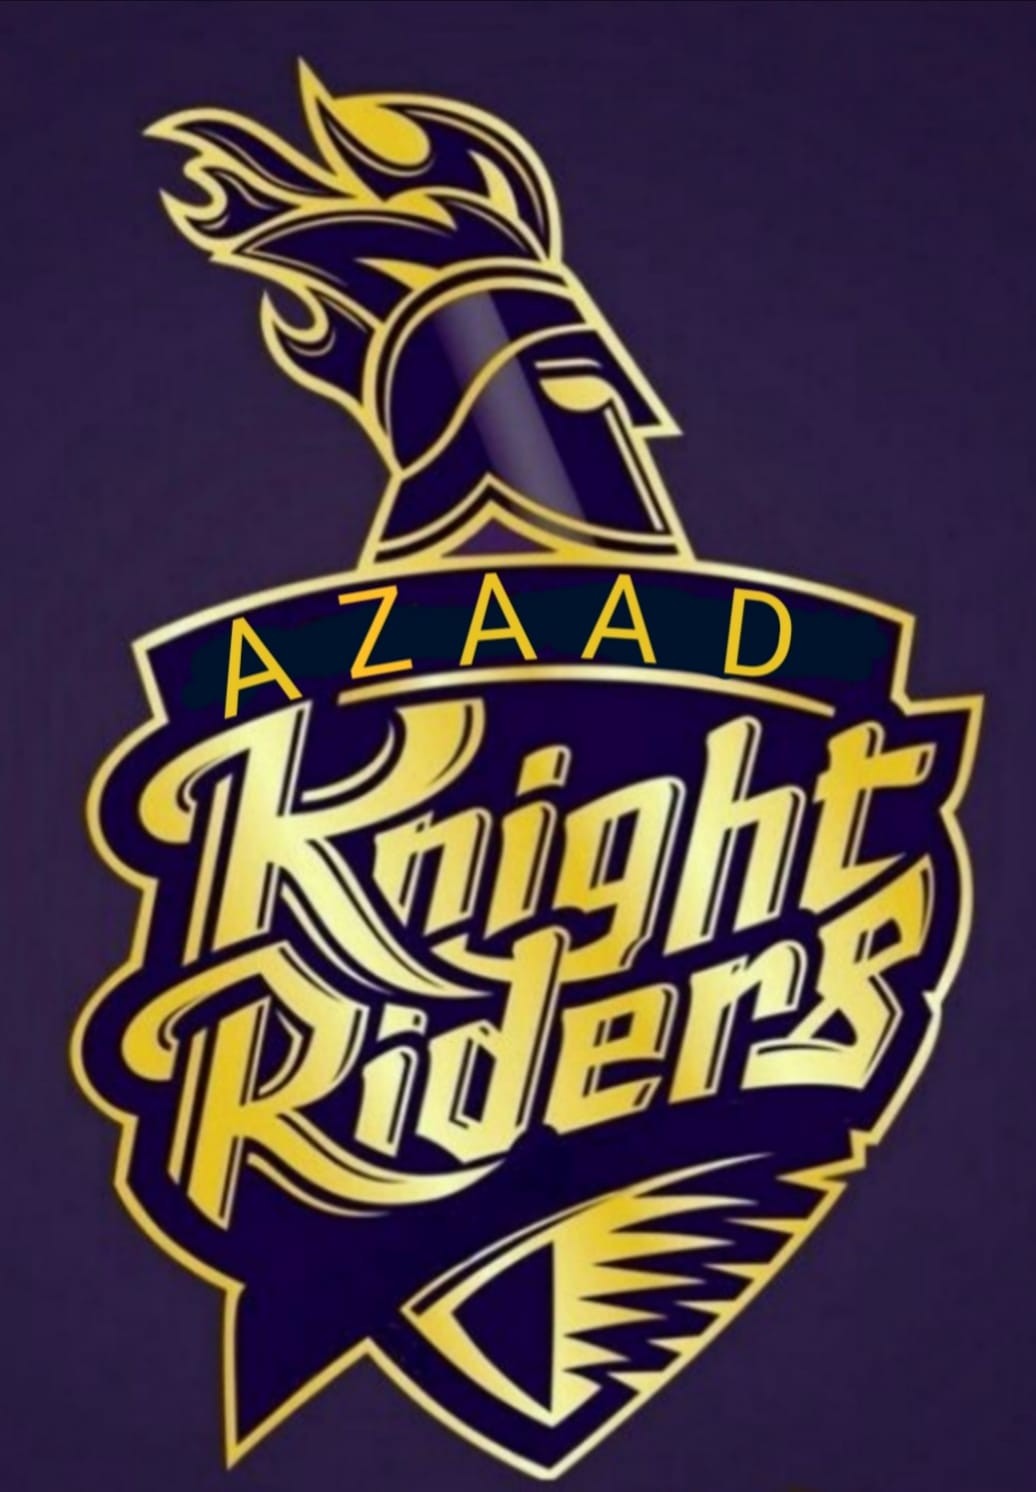 AZAAD KNIGHT RIDERS